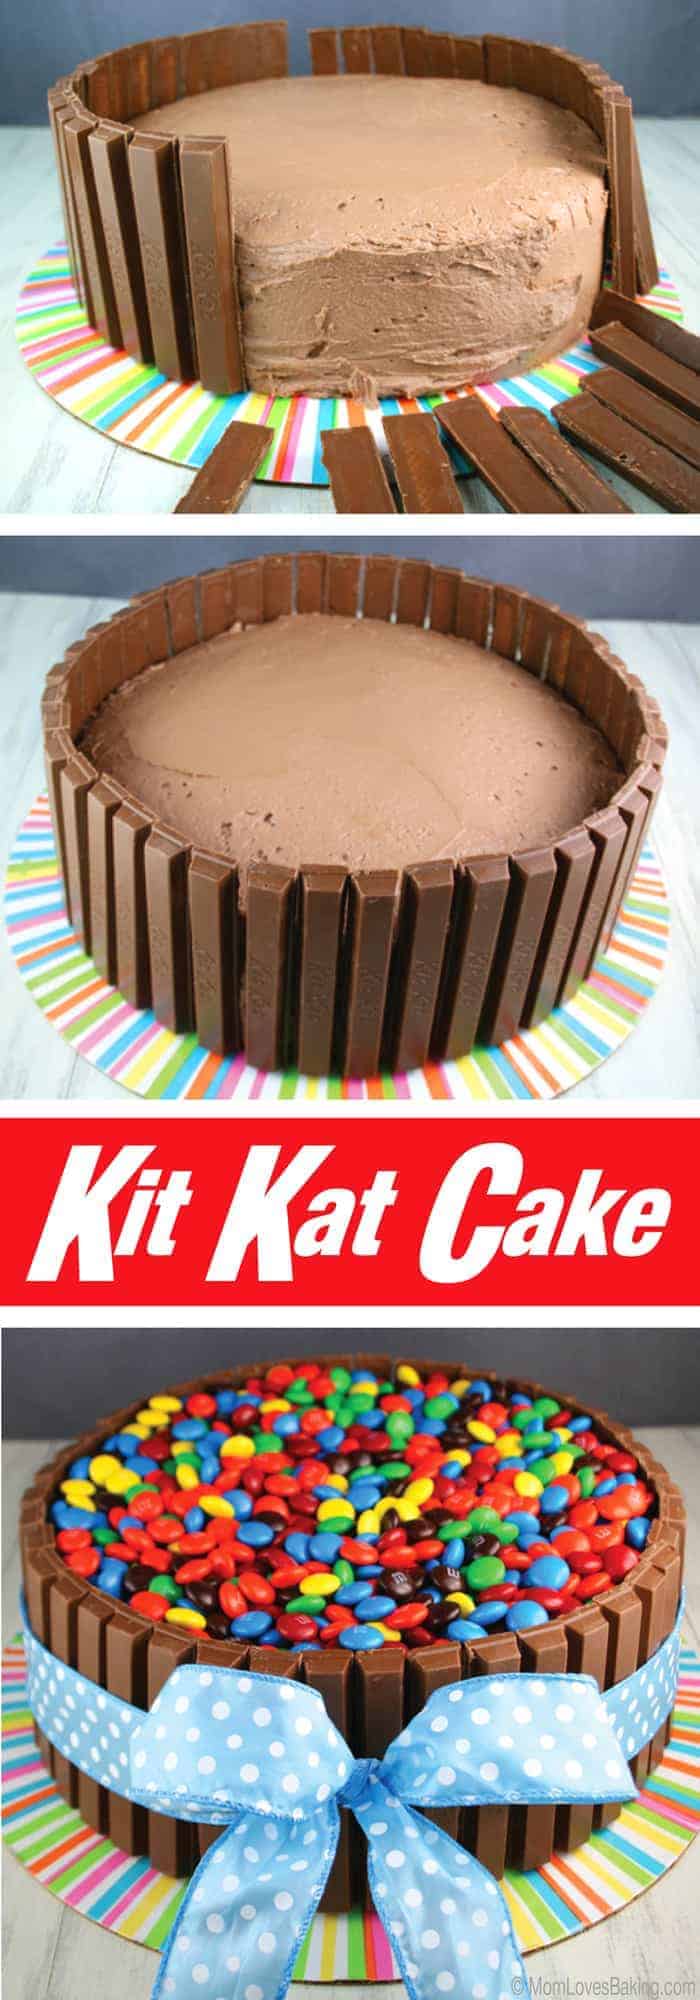 Kit-Kat-Cake-Long